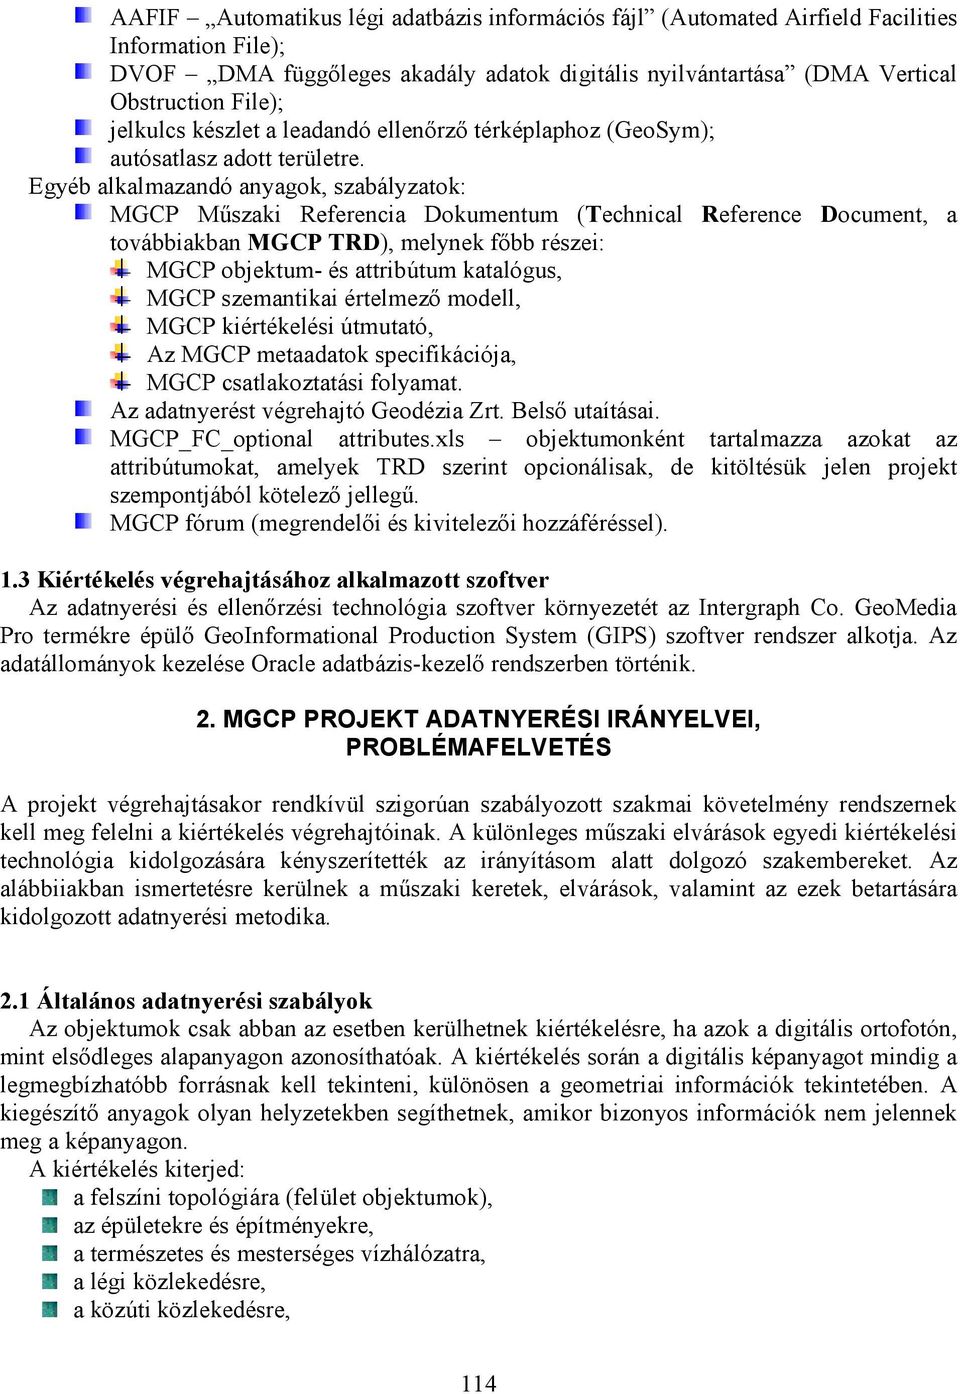 Egyéb alkalmazandó anyagok, szabályzatok: MGCP Műszaki Referencia Dokumentum (Technical Reference Document, a továbbiakban MGCP TRD), melynek főbb részei: MGCP objektum- és attribútum katalógus, MGCP